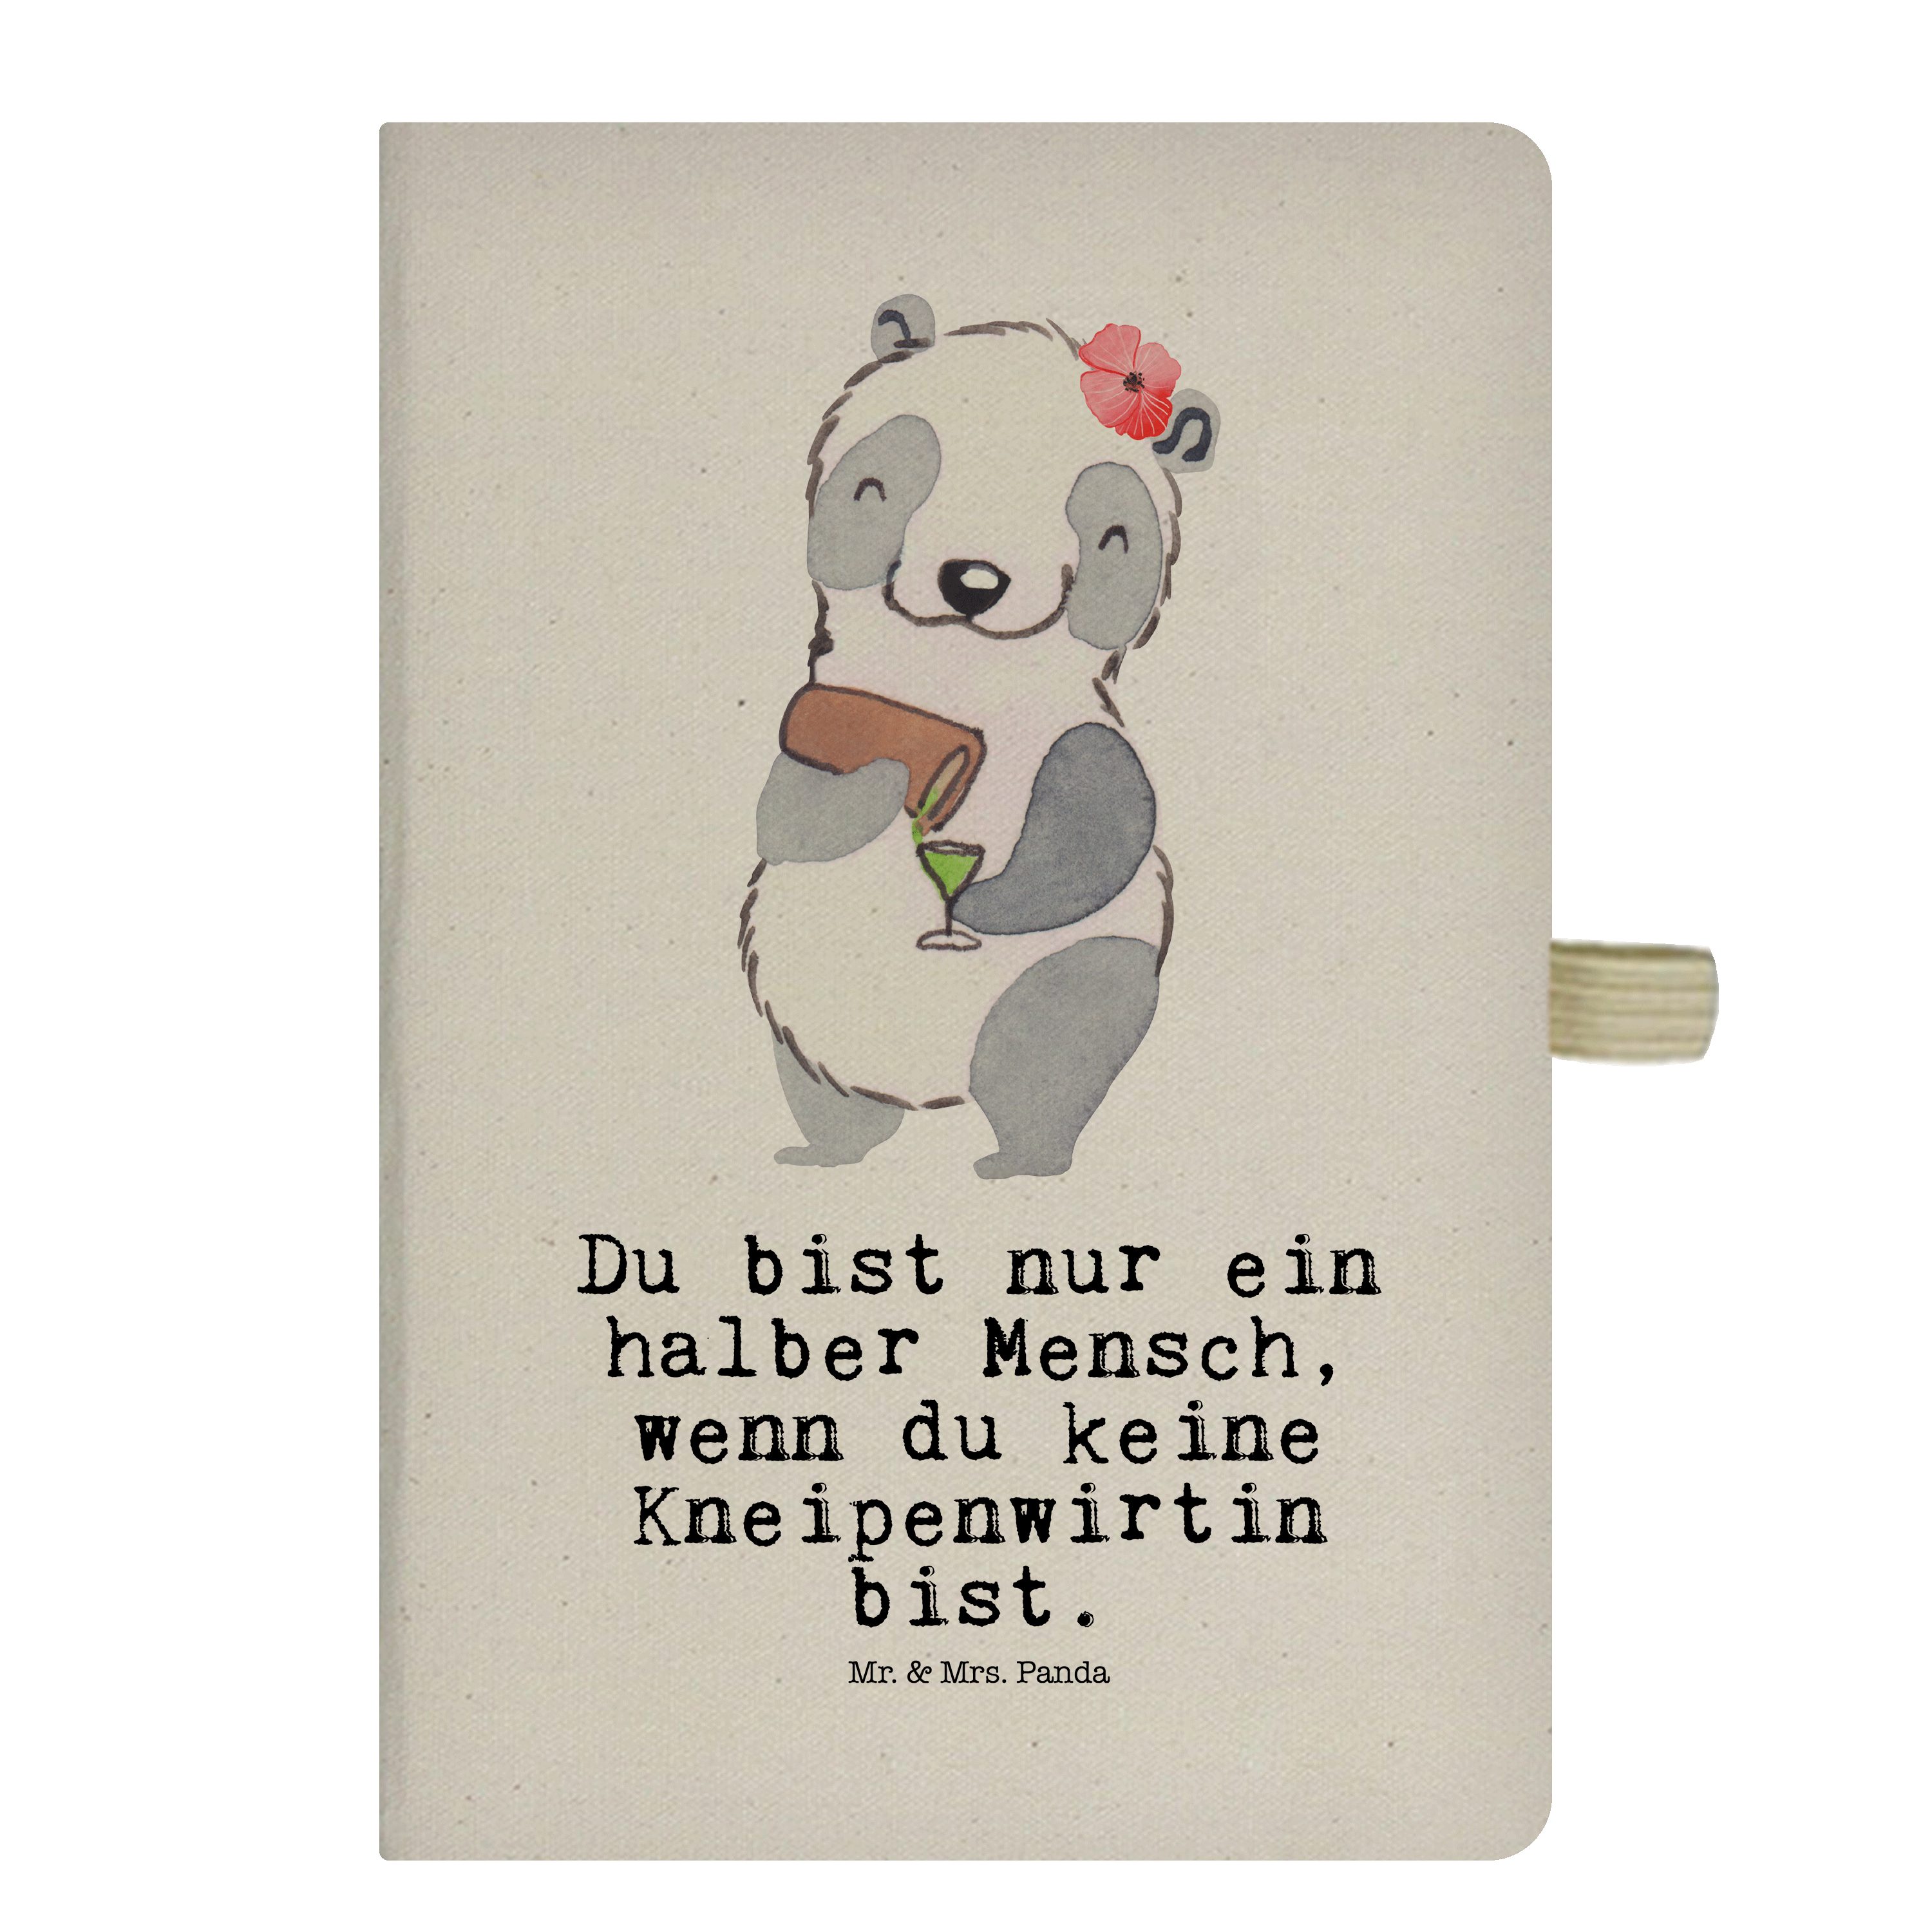 Mr. & Mrs. Panda Notizbuch Kneipenwirtin mit Herz - Transparent - Geschenk, Gastwirtin, Eintrage Mr. & Mrs. Panda